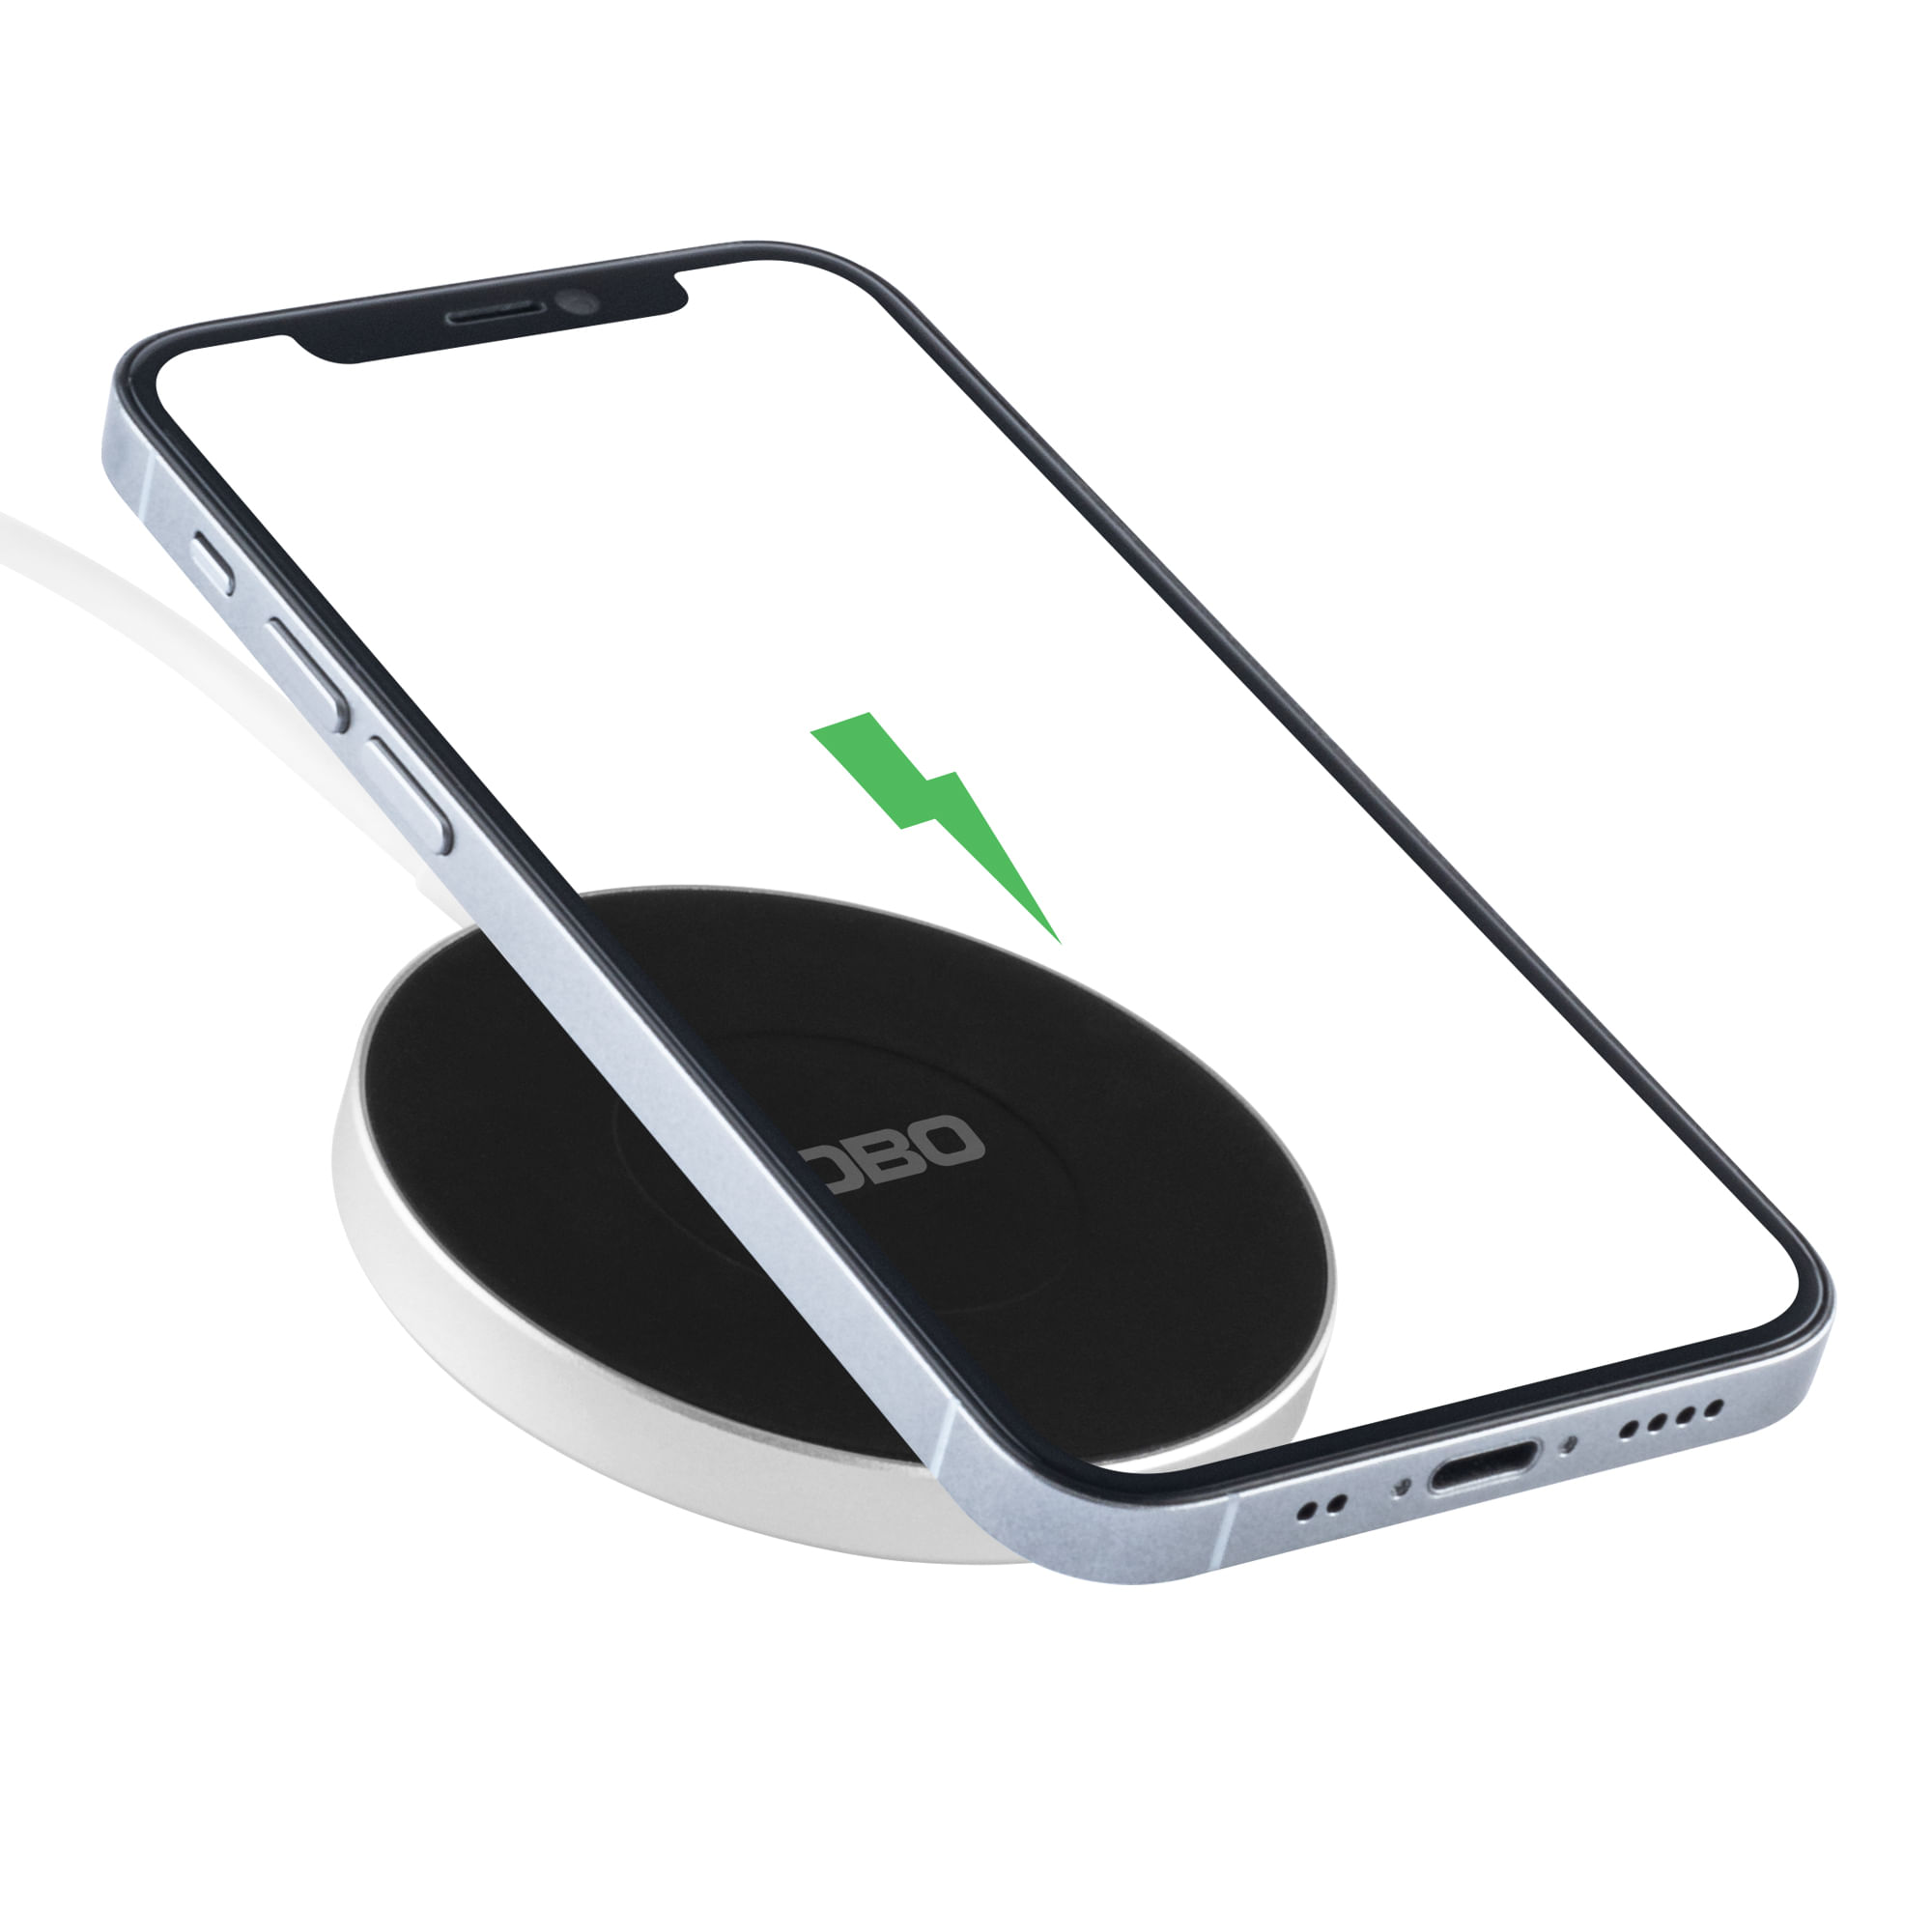 Cargador Mobo Iphone 4 Netdi Tienda de Celulares, Accesorios y Reparación